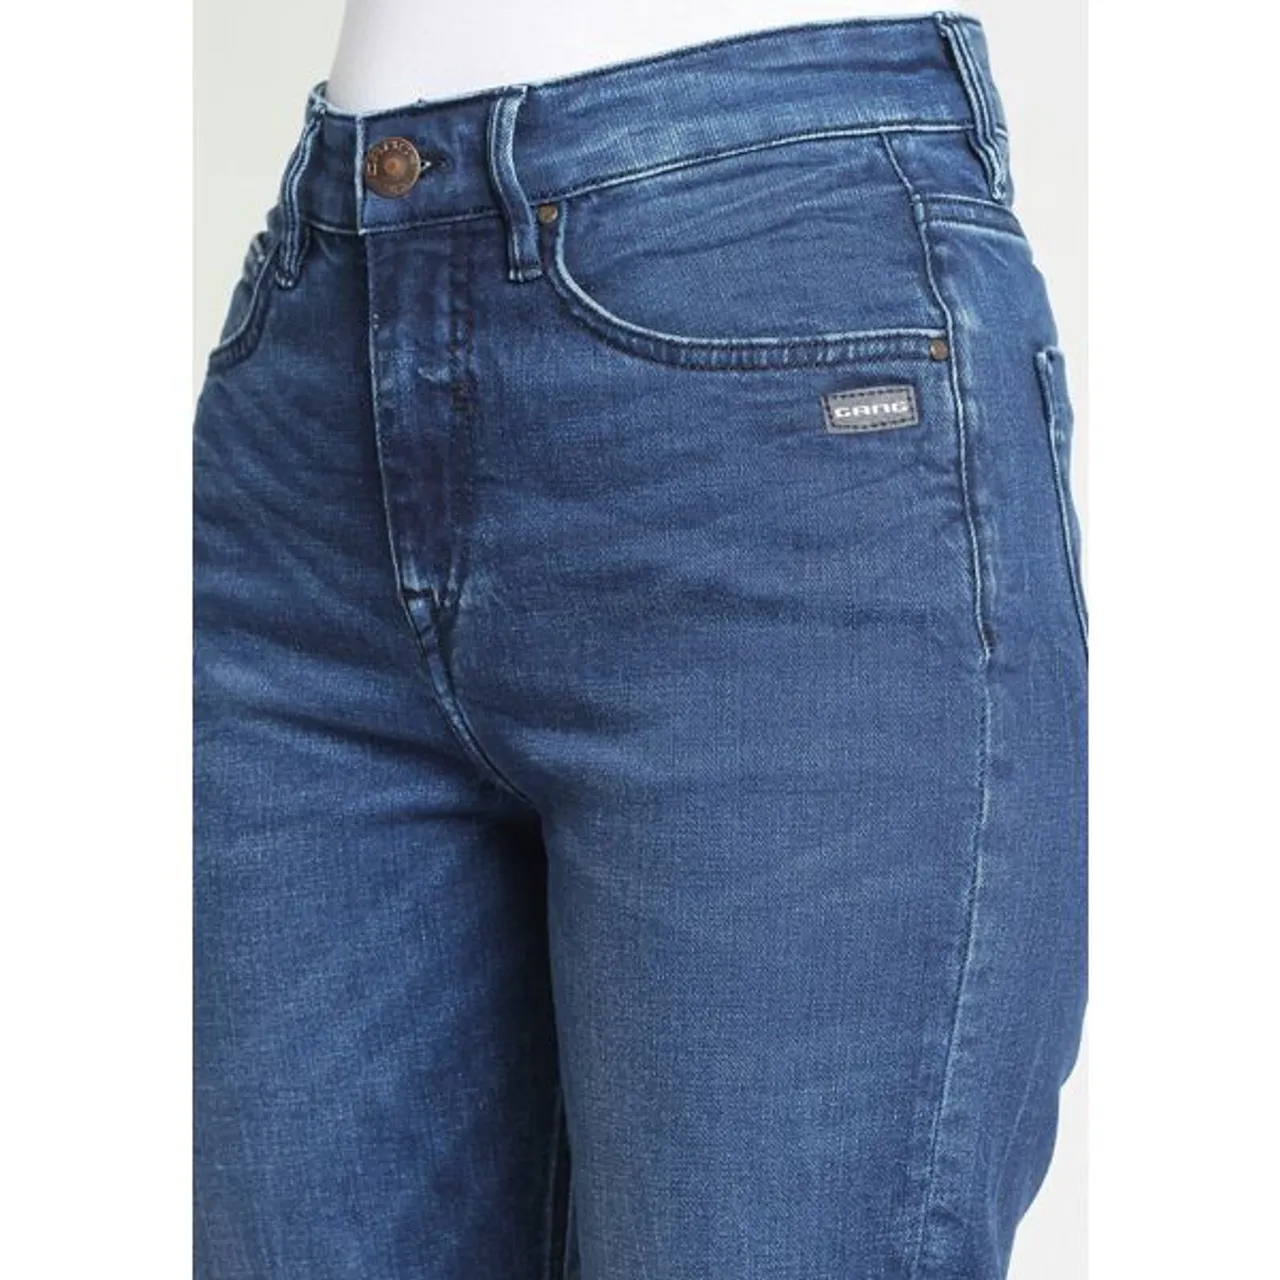 Mom-Jeans GANG "94GLORIA CROPPED" Gr. 26 (34), N-Gr, blau (dark water (mid blue)) Damen Jeans Mom mit Stretch für die perfekte Passform